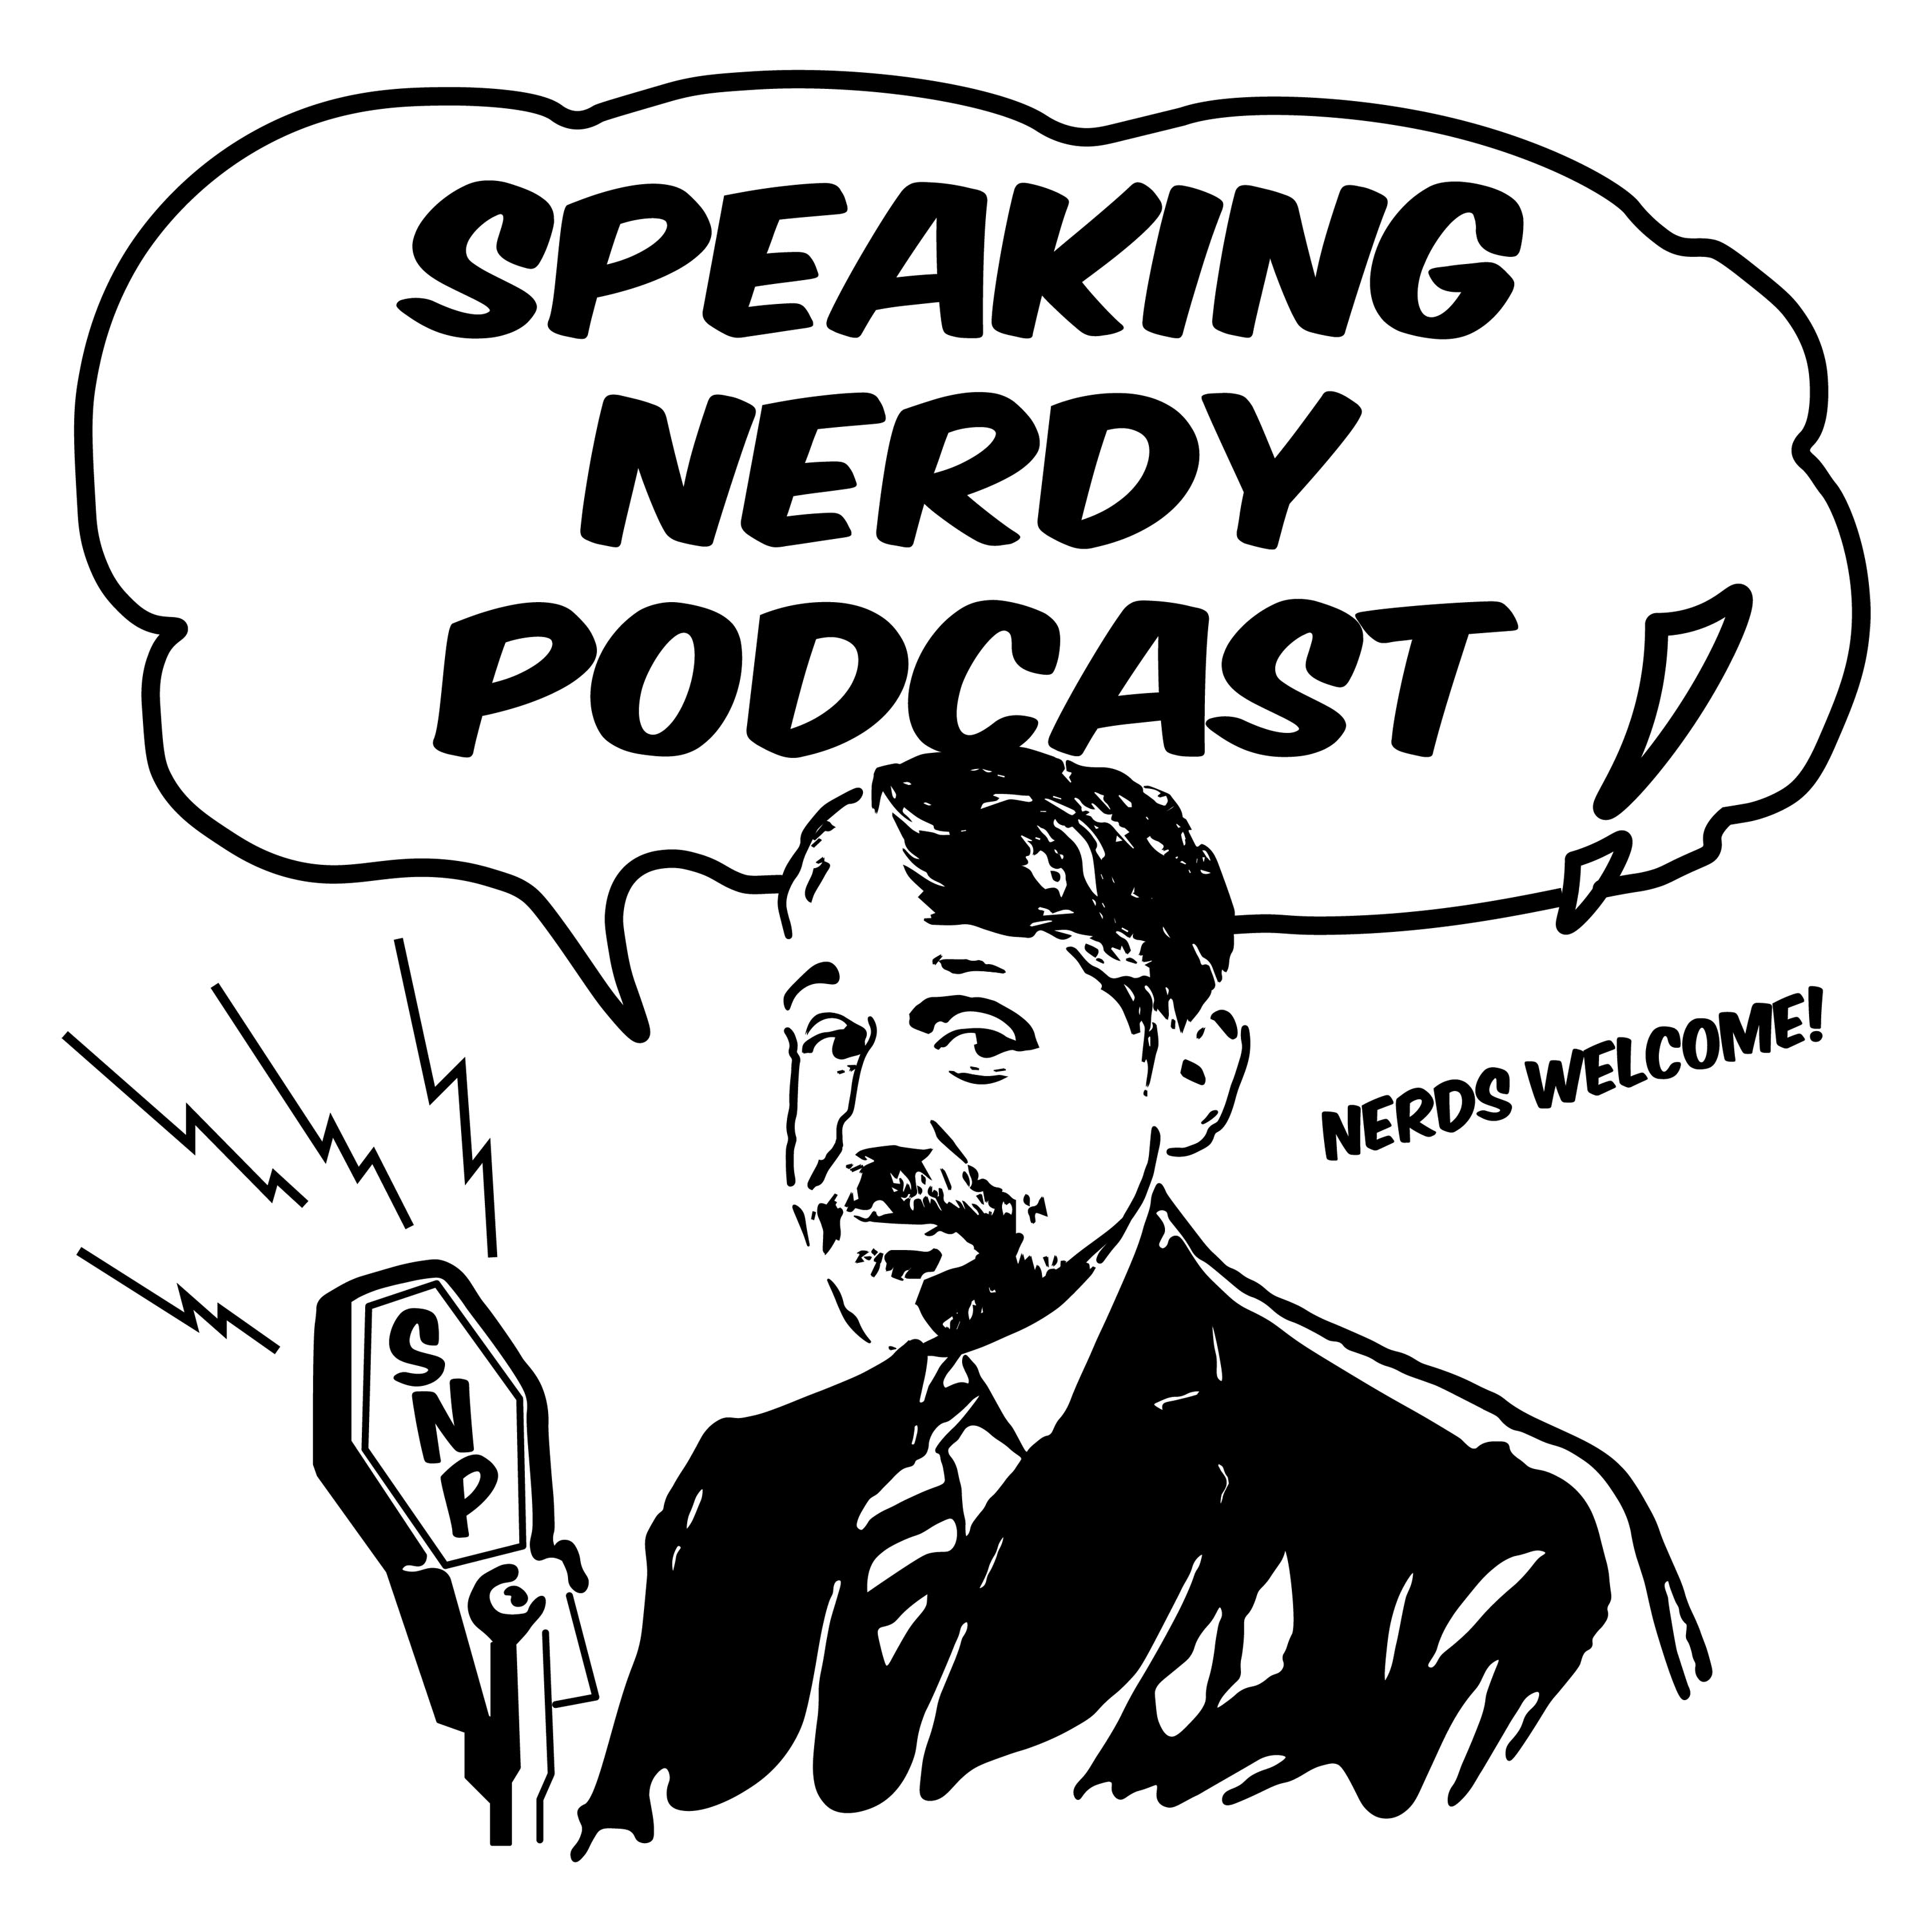 Artwork for podcast Speaking Nerdy Podcast